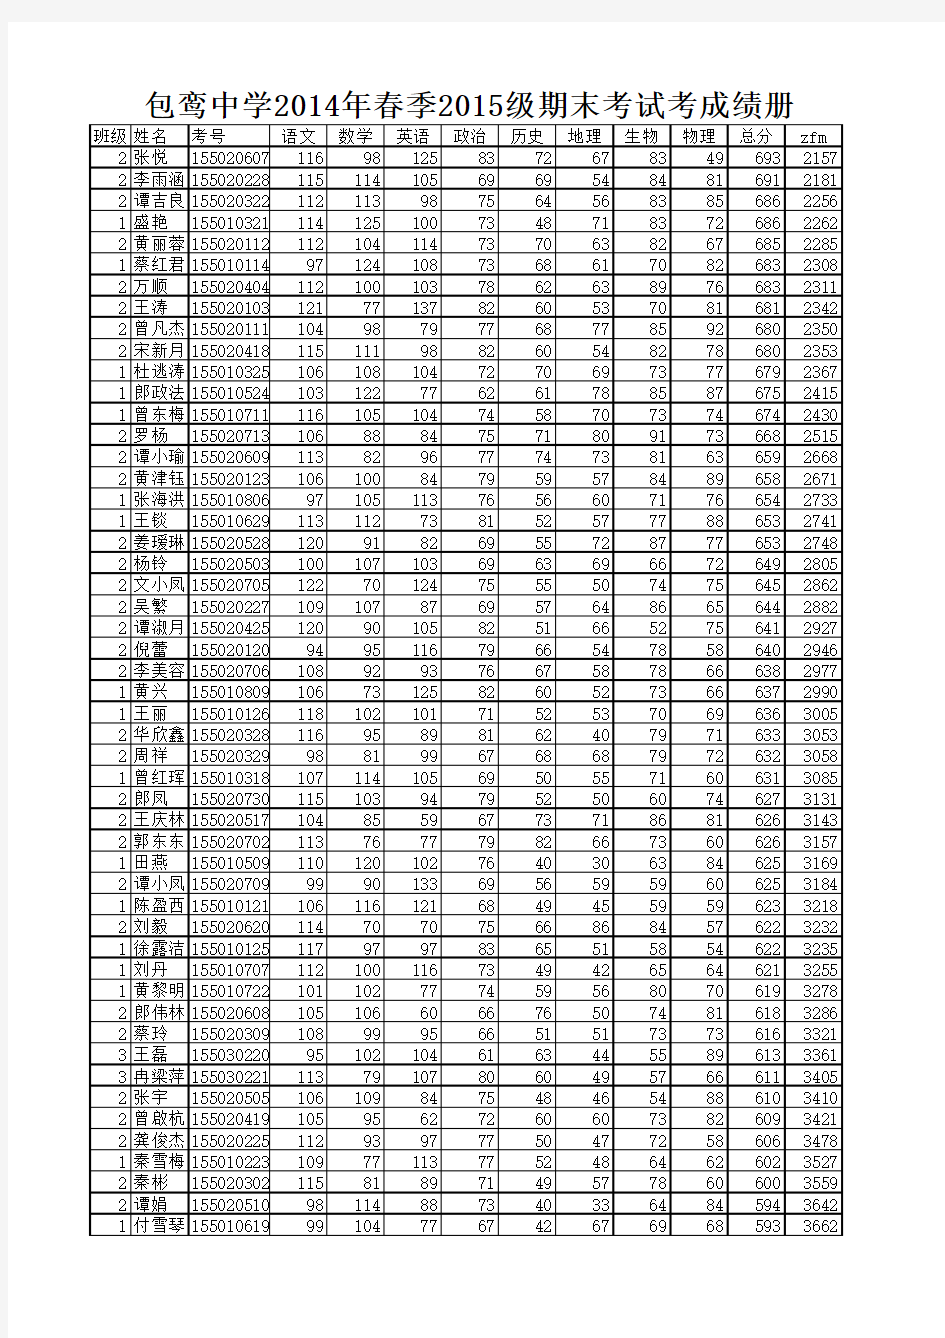 2015级期末考试成绩表